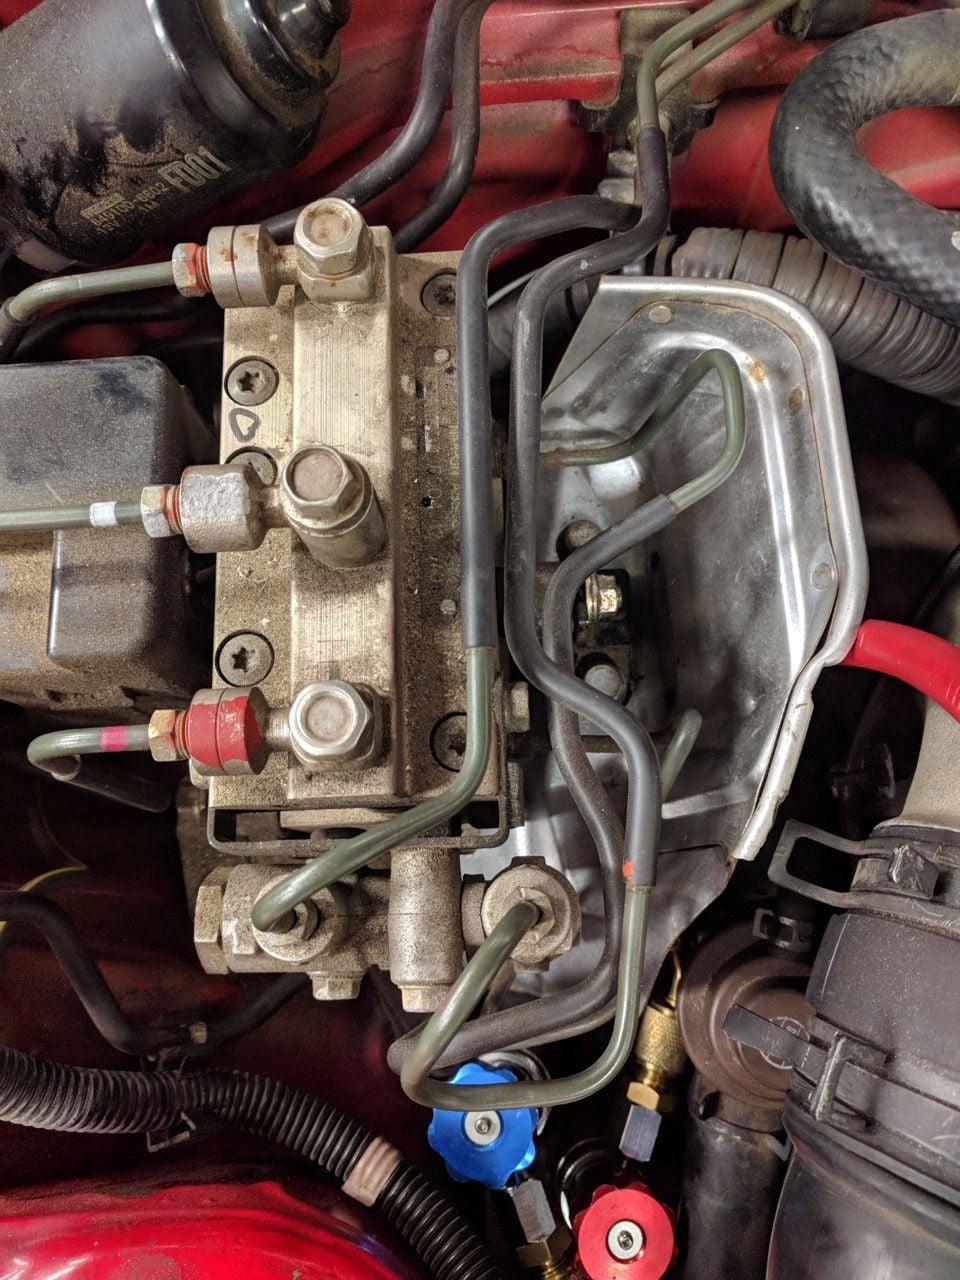 Brakes - WTB LHD FD ABS pump heat shield/shroud - Used - 1993 to 1995 Mazda RX-7 - Edmonds, WA 98026, United States